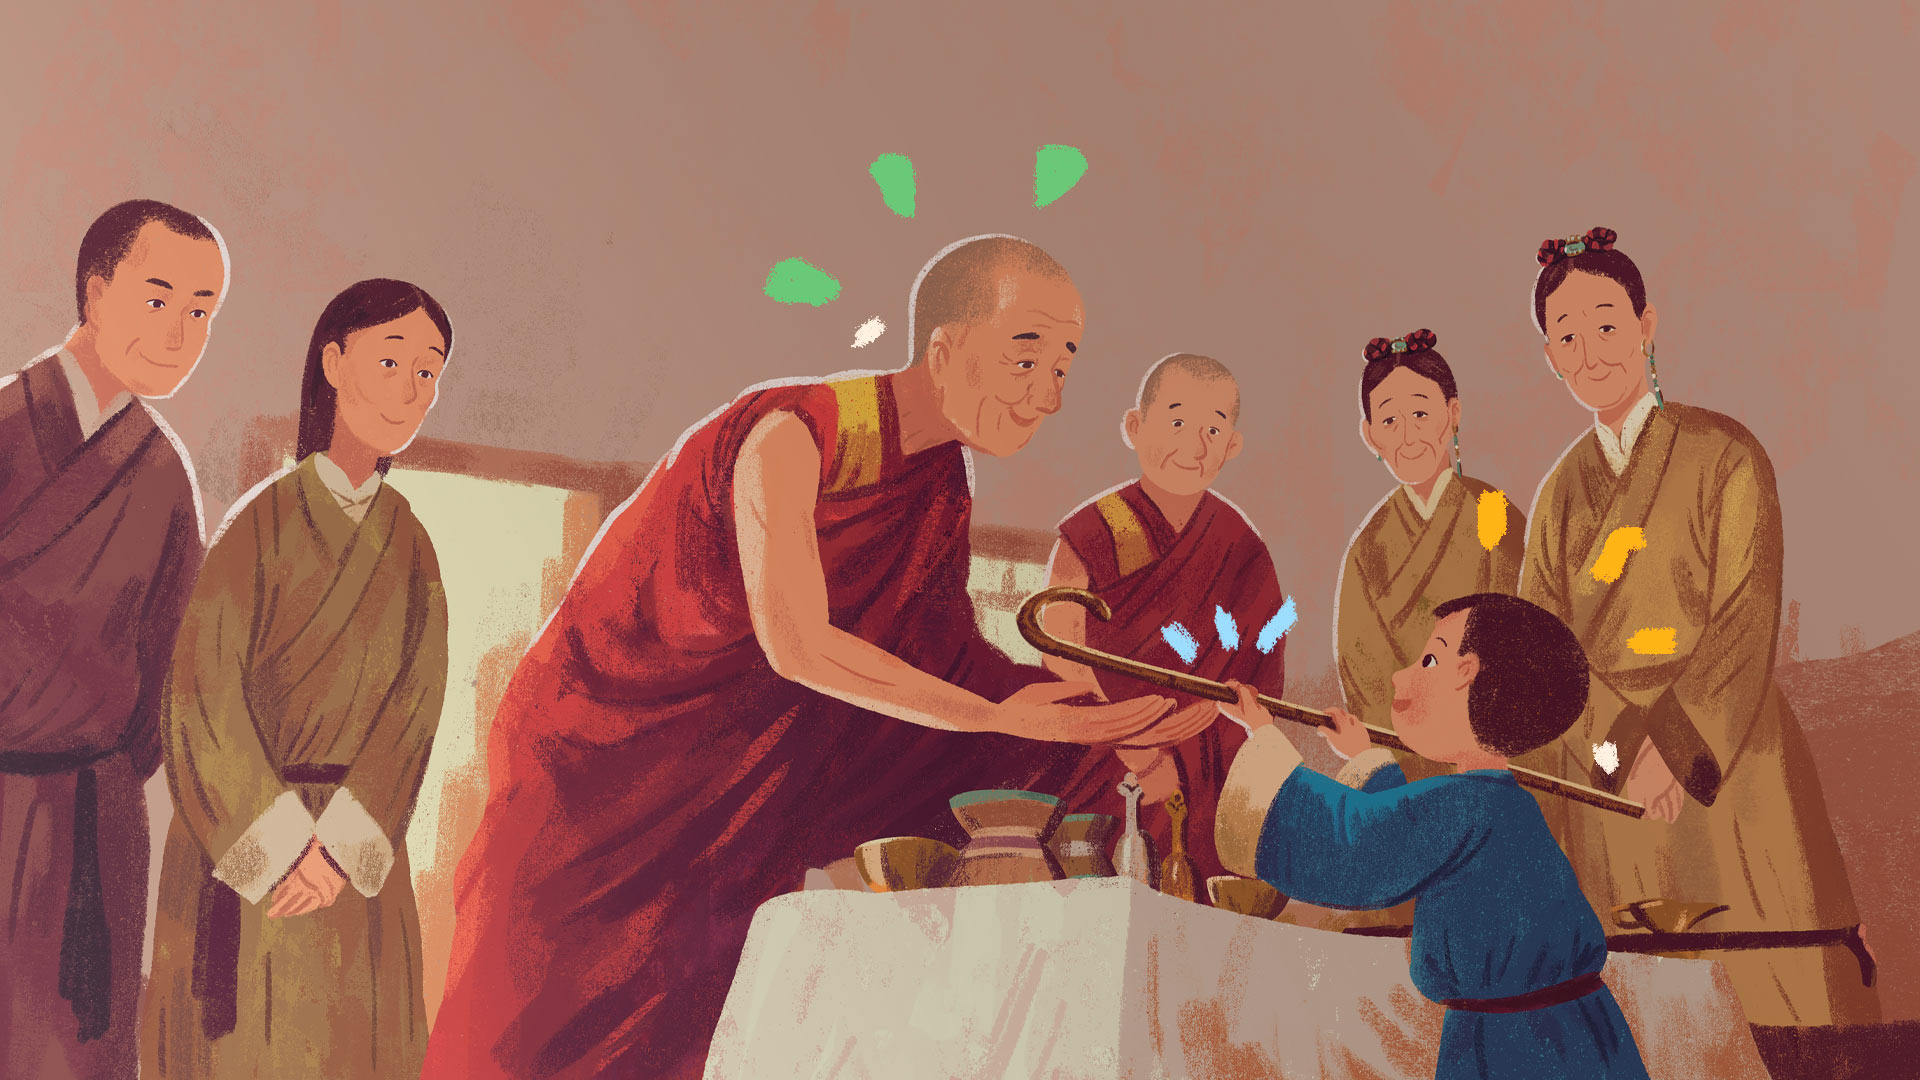 Ilustração do livro do Dalai Lama, "A semente da compaixão", em que Dalai Lama reconhece os pertences do líder budista que o antecedeu